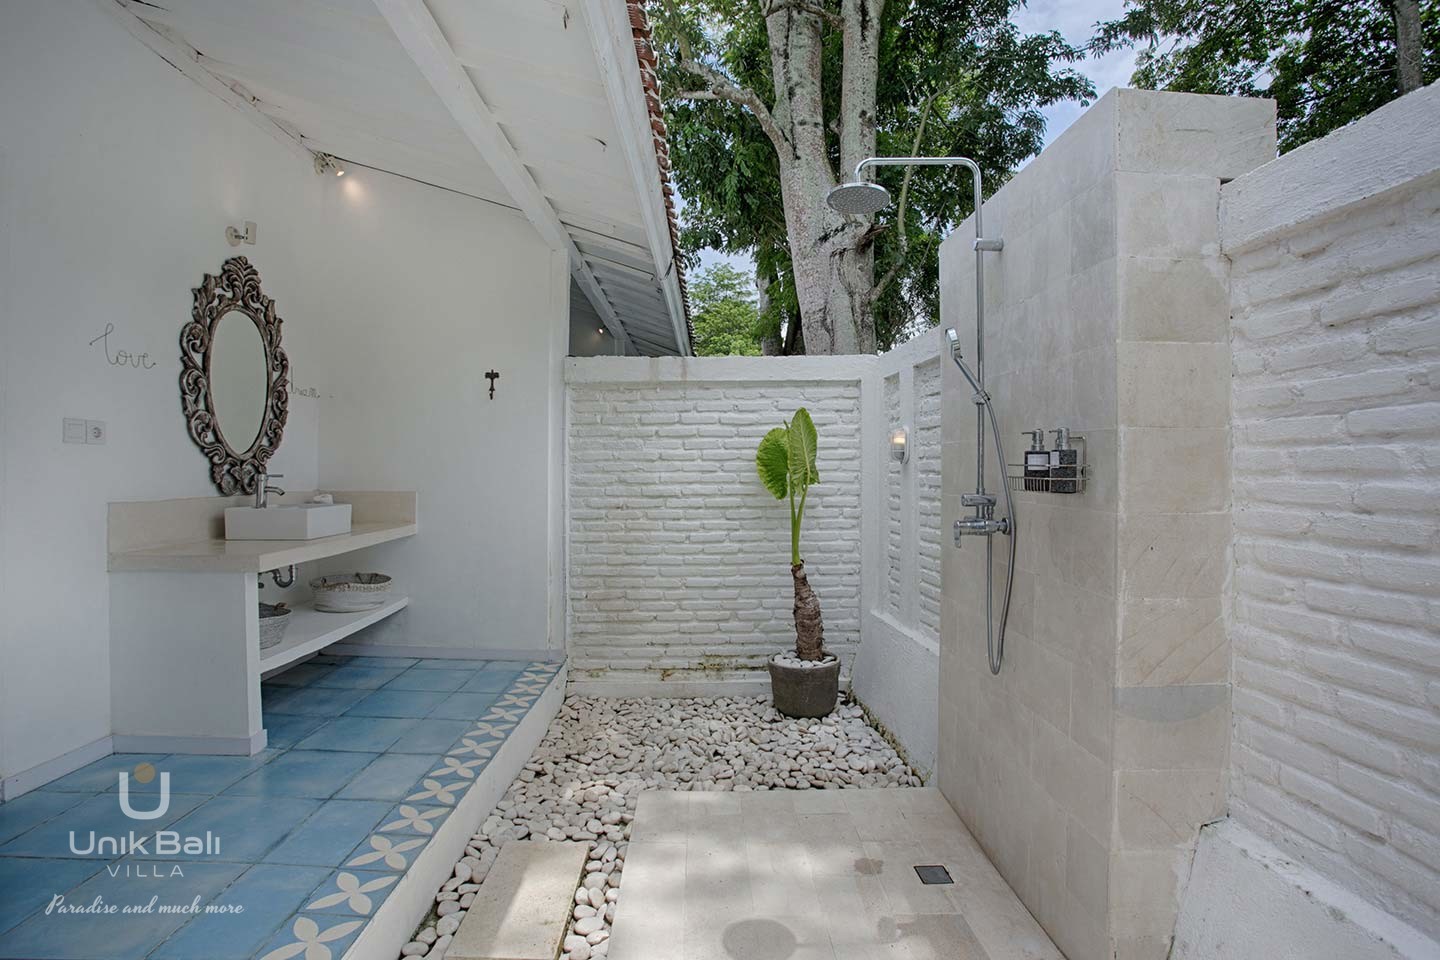 unik-bali-villa-for-rent-blue-damai-home-vacation-private-bathroom